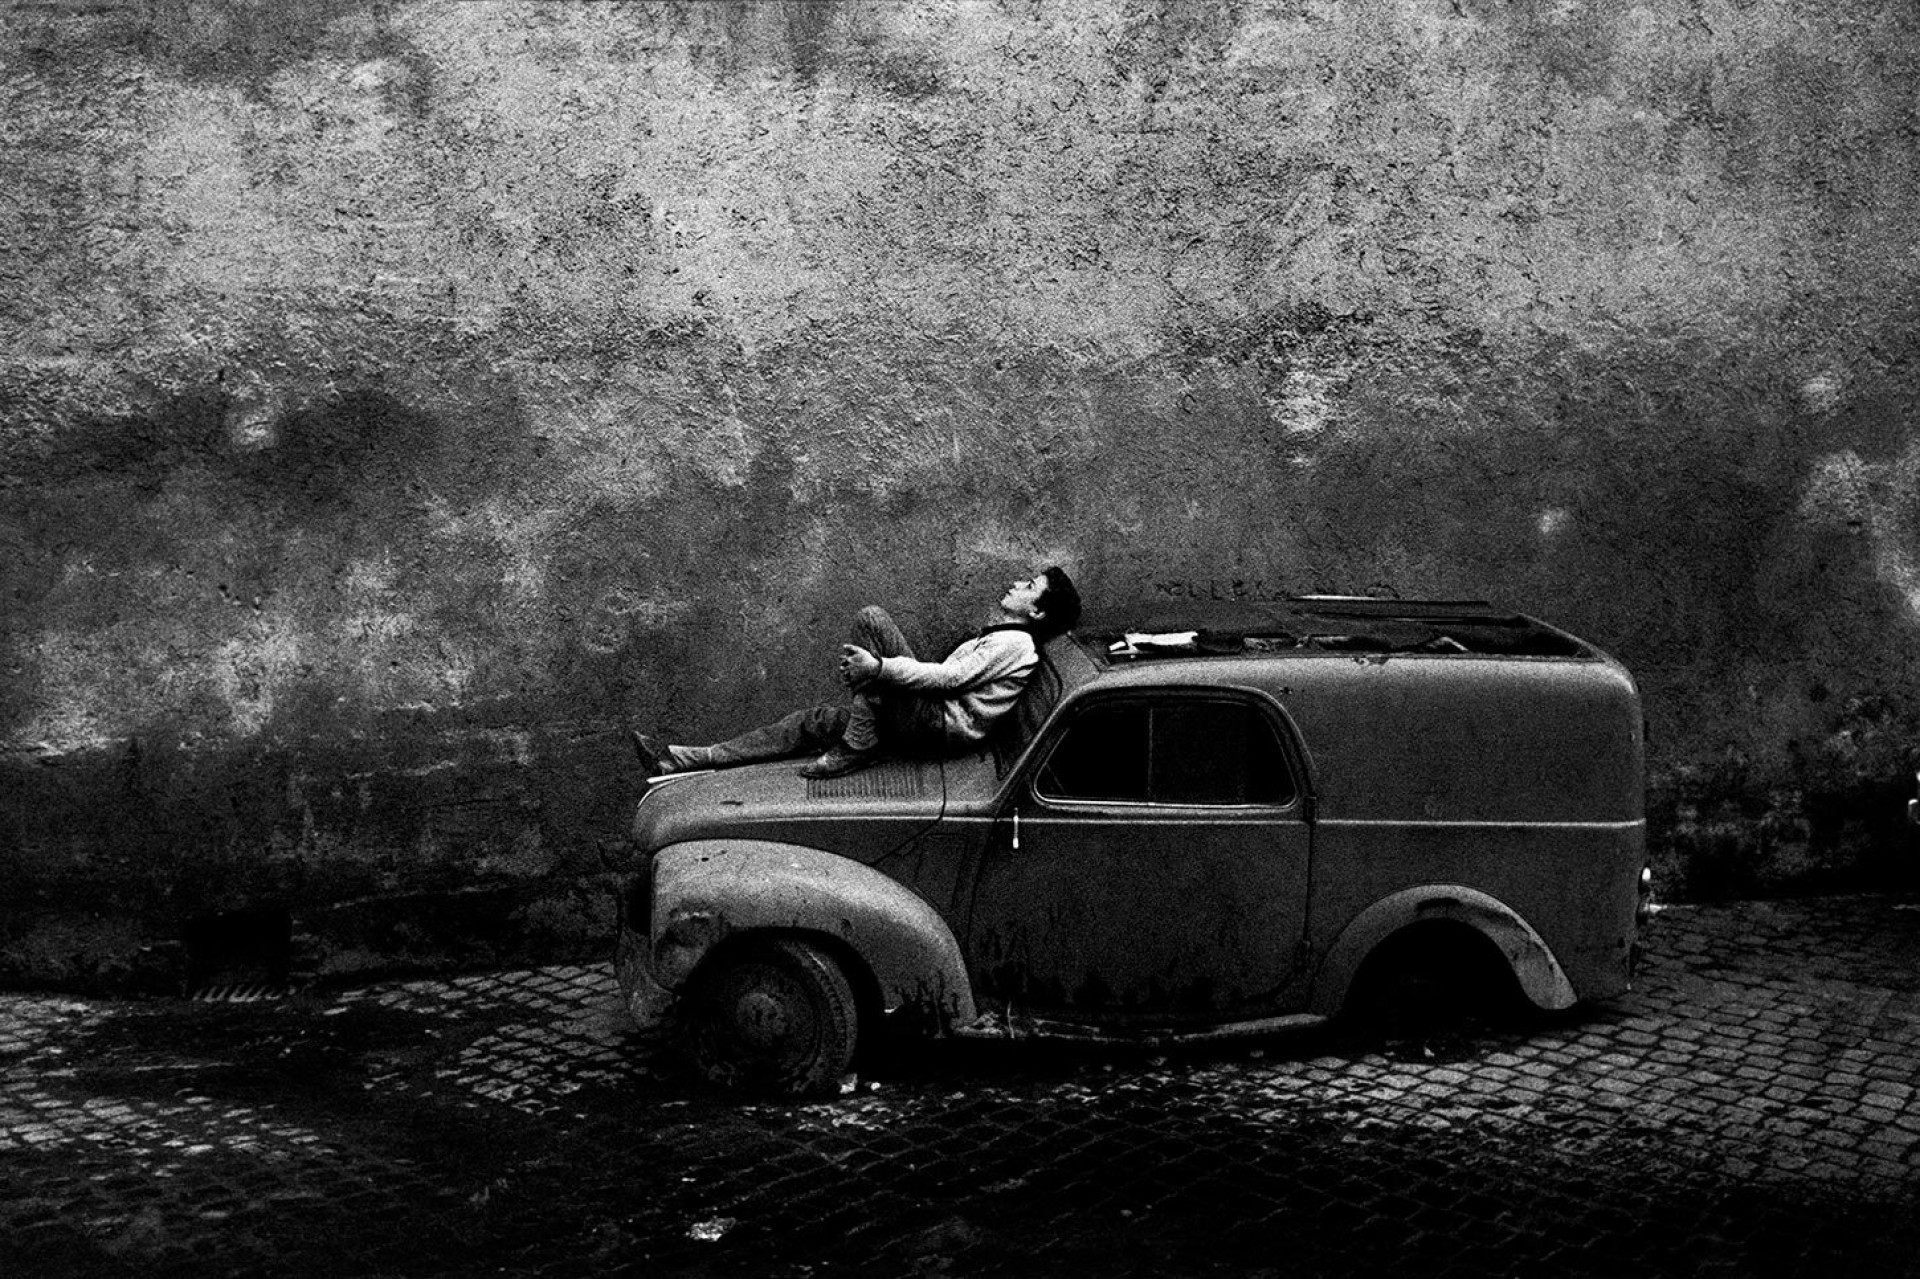 Рим, Италия, 1964. Фотограф Бруно Барби